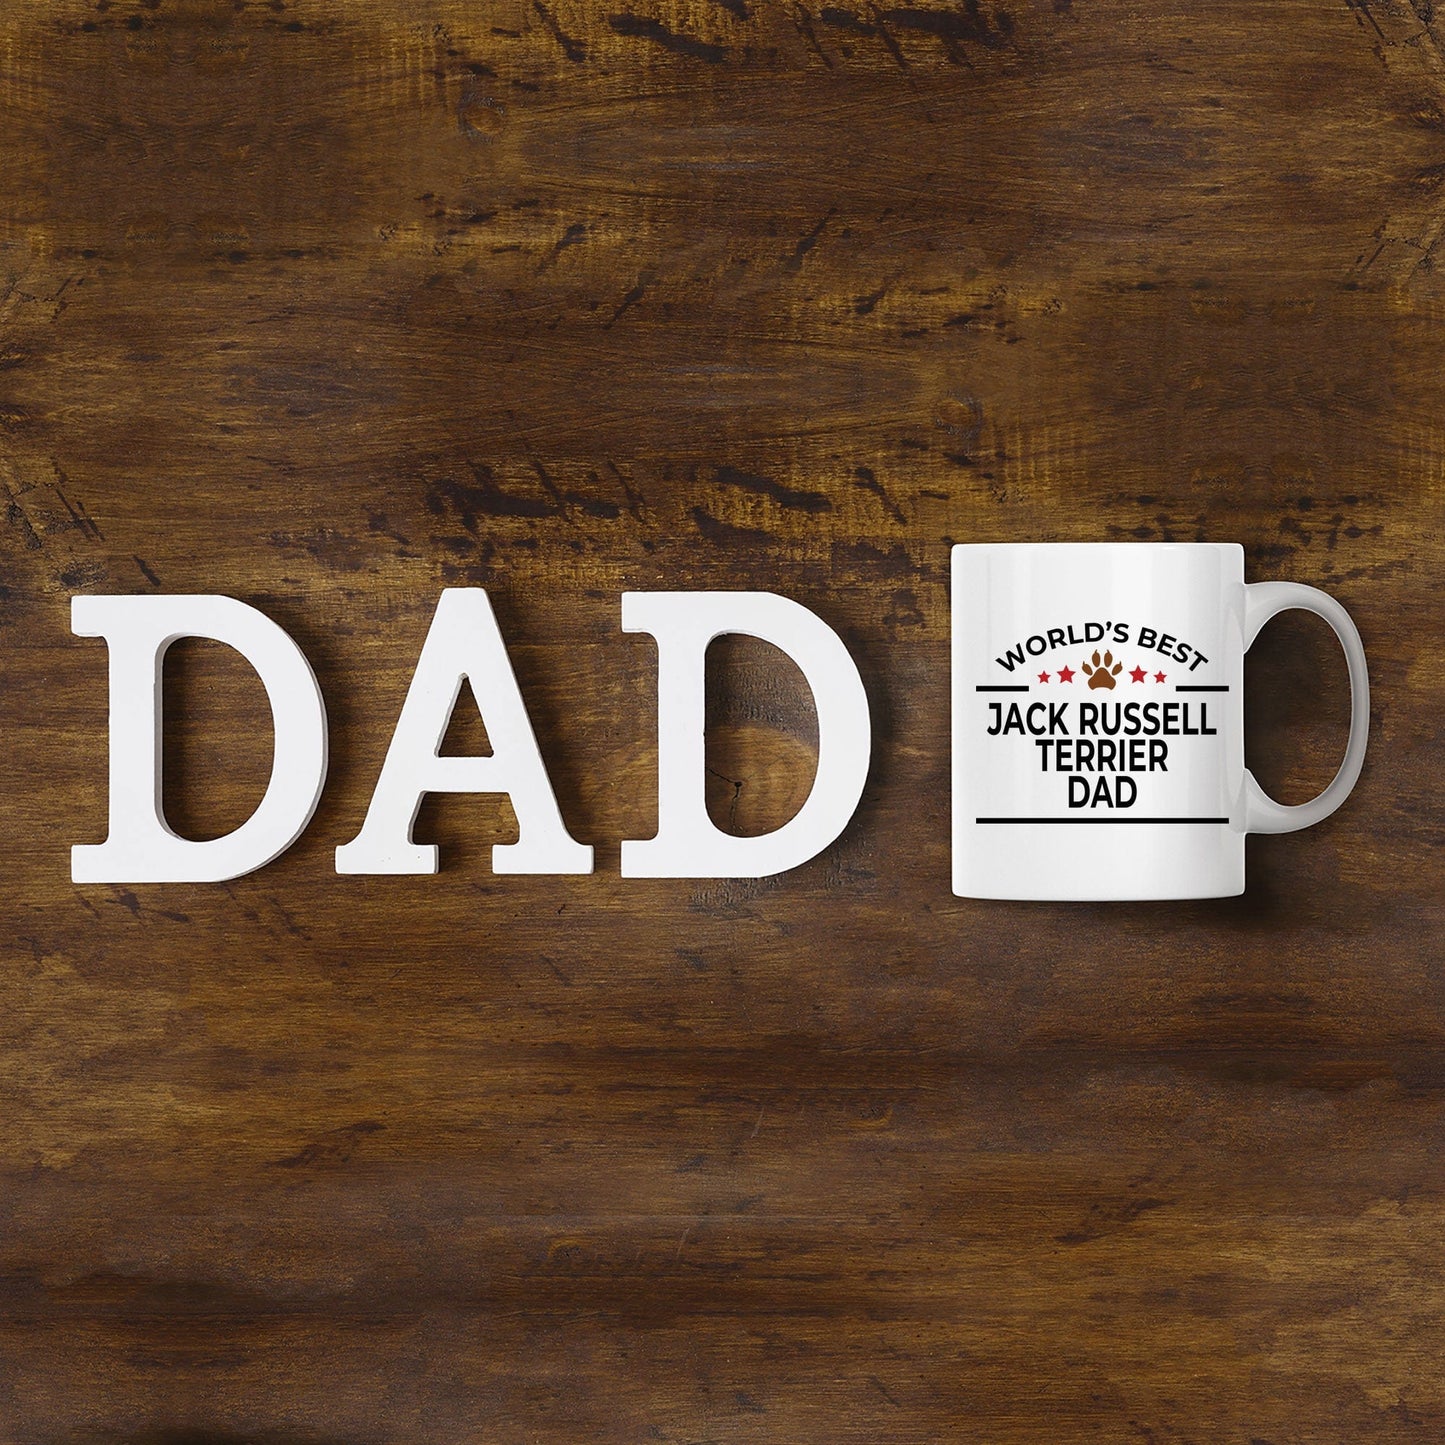 Jack Russell Terrier Dad Coffee Mug